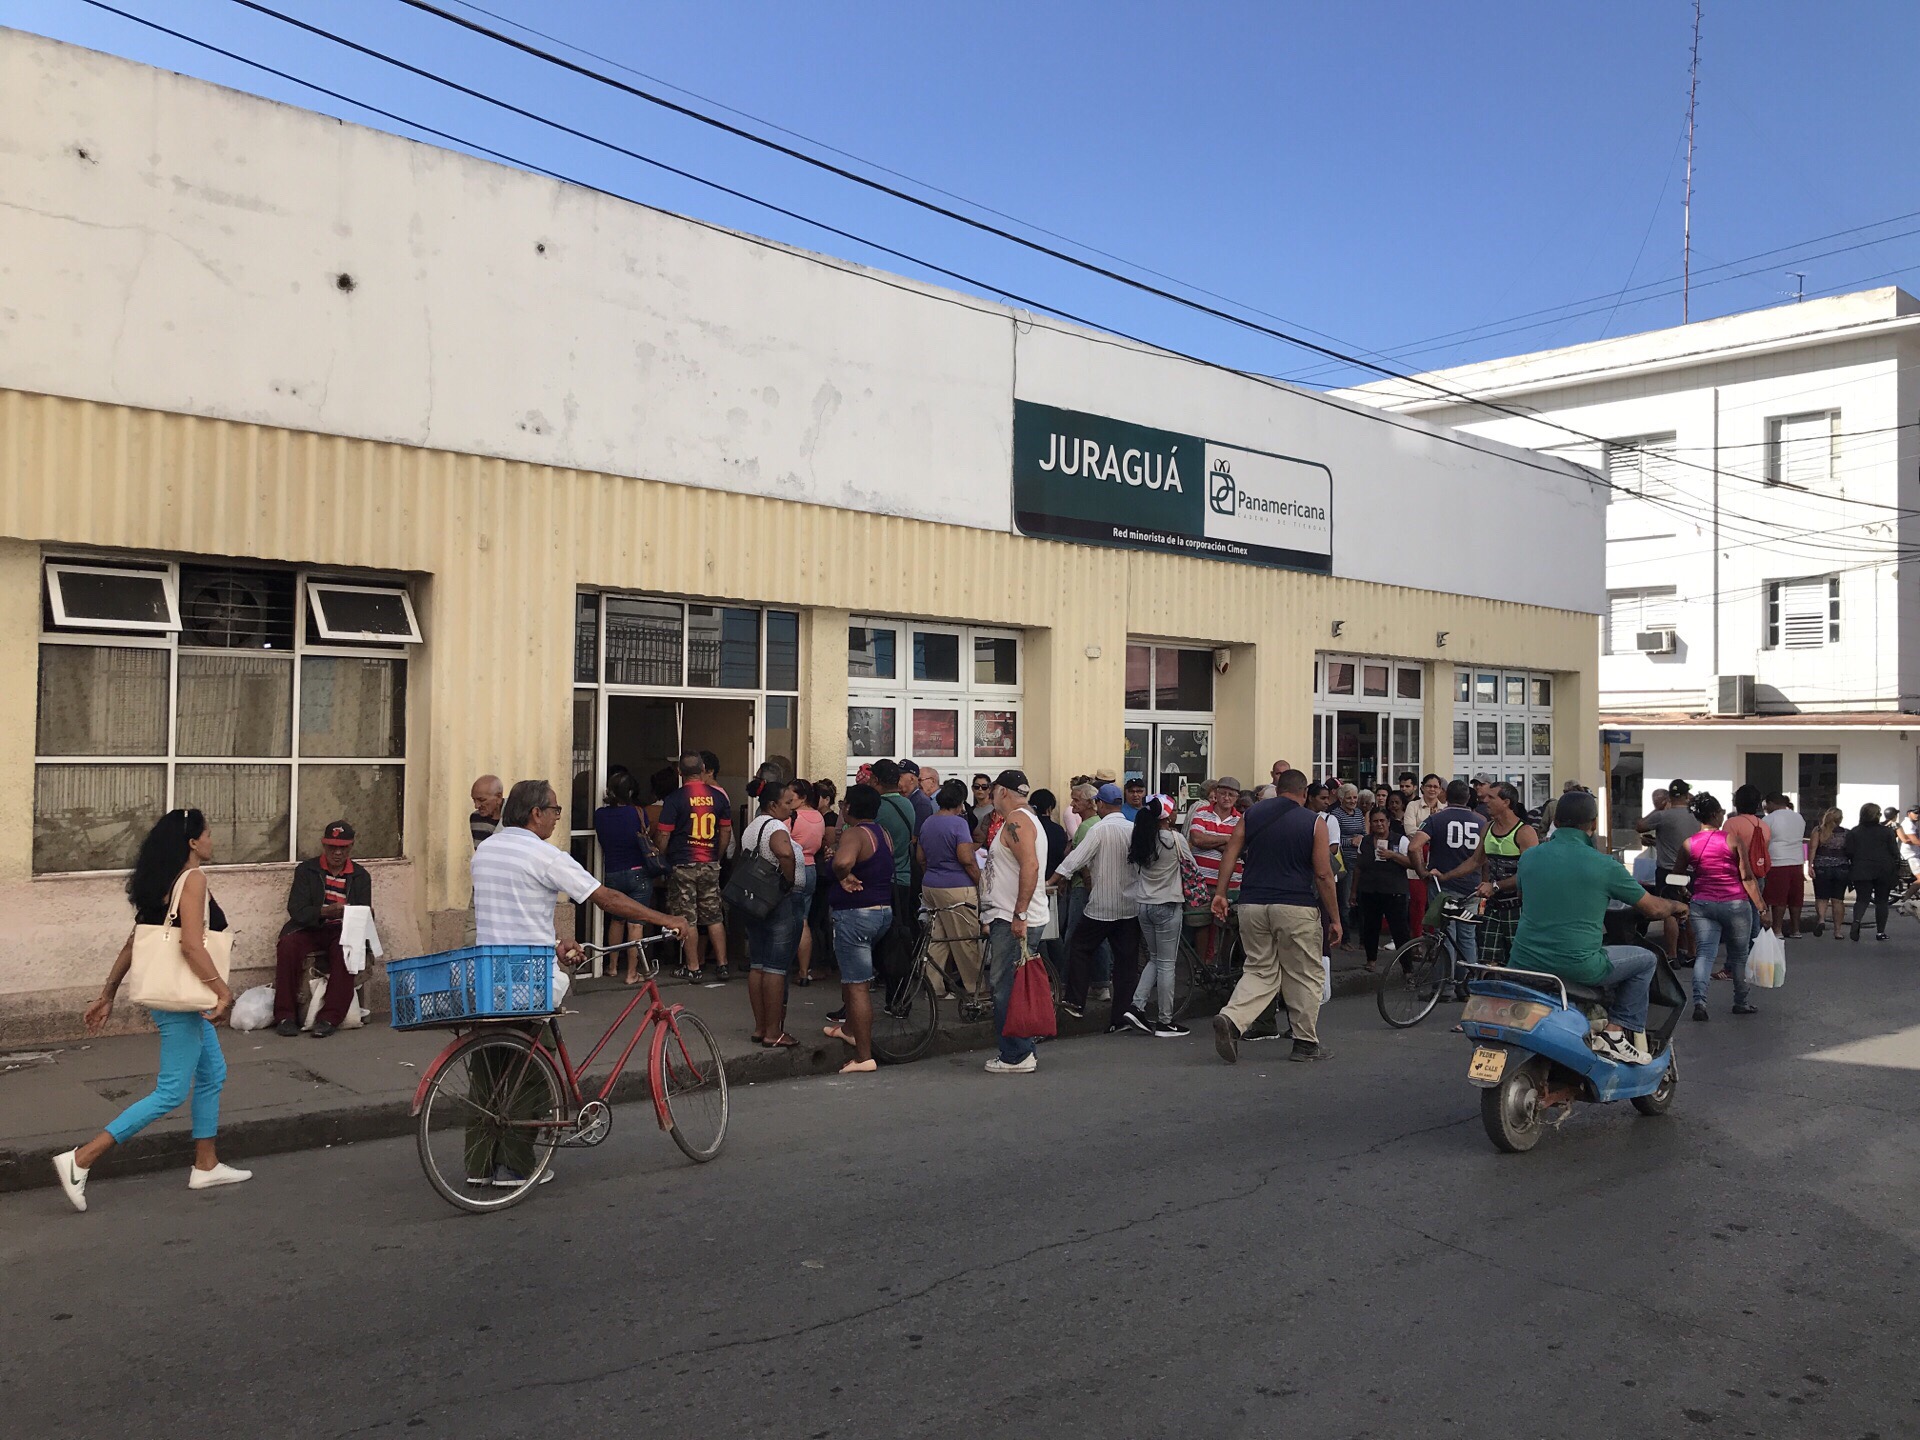 #排队的人群# 你知道这些人为什么排队吗？为了买面包！古巴的面包是定量供应的，属稀缺品。